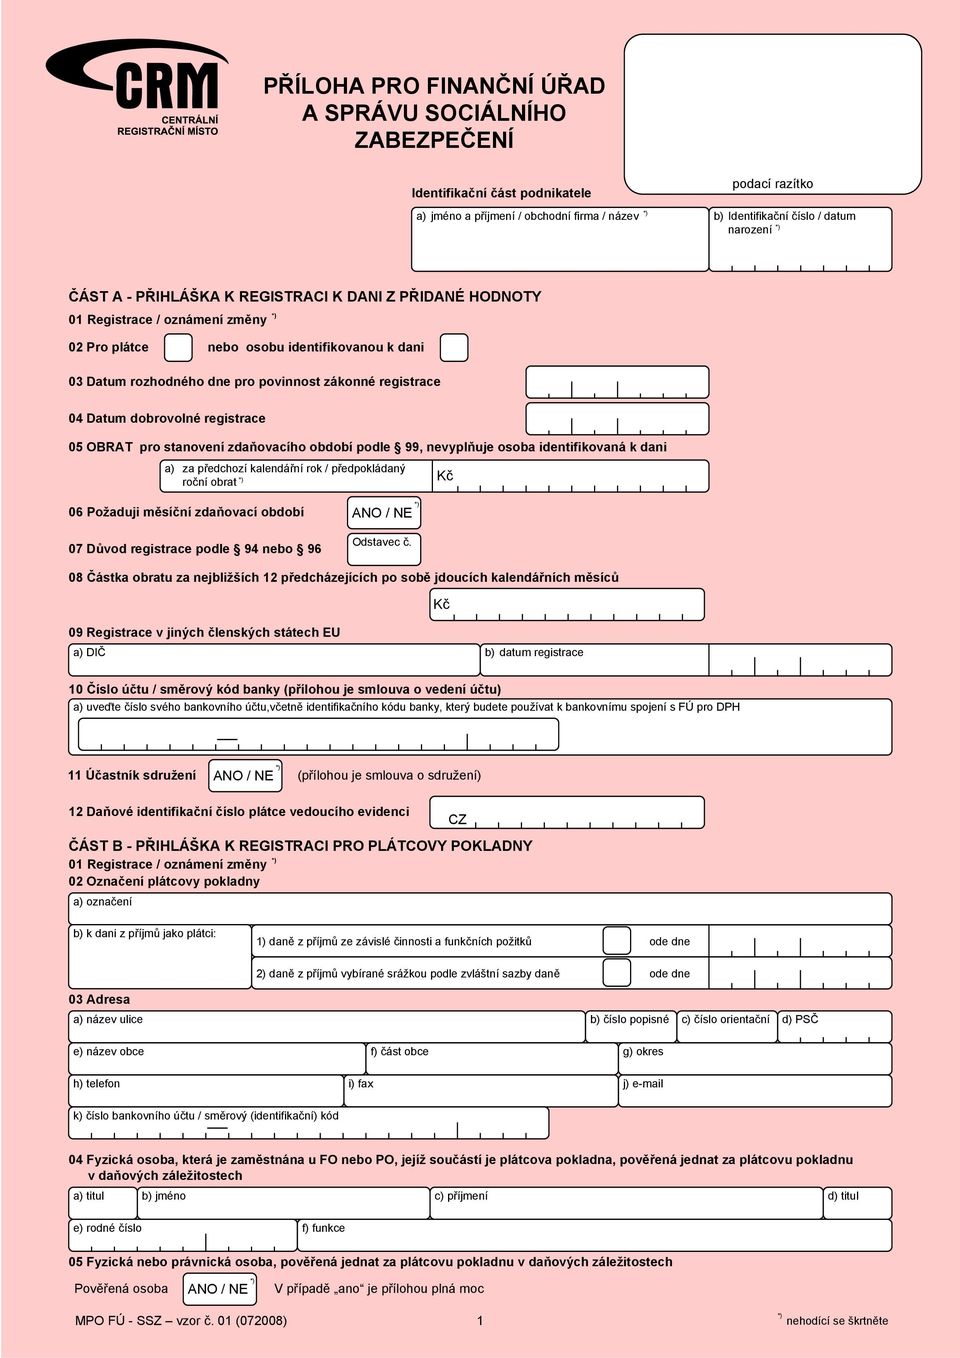 dobrovolné registrace 05 OBRAT pro stanovení zdaňovacího období podle 99, nevyplňuje osoba identifikovaná k dani a) za předchozí kalendářní rok / předpokládaný roční obrat 06 Požaduji měsíční